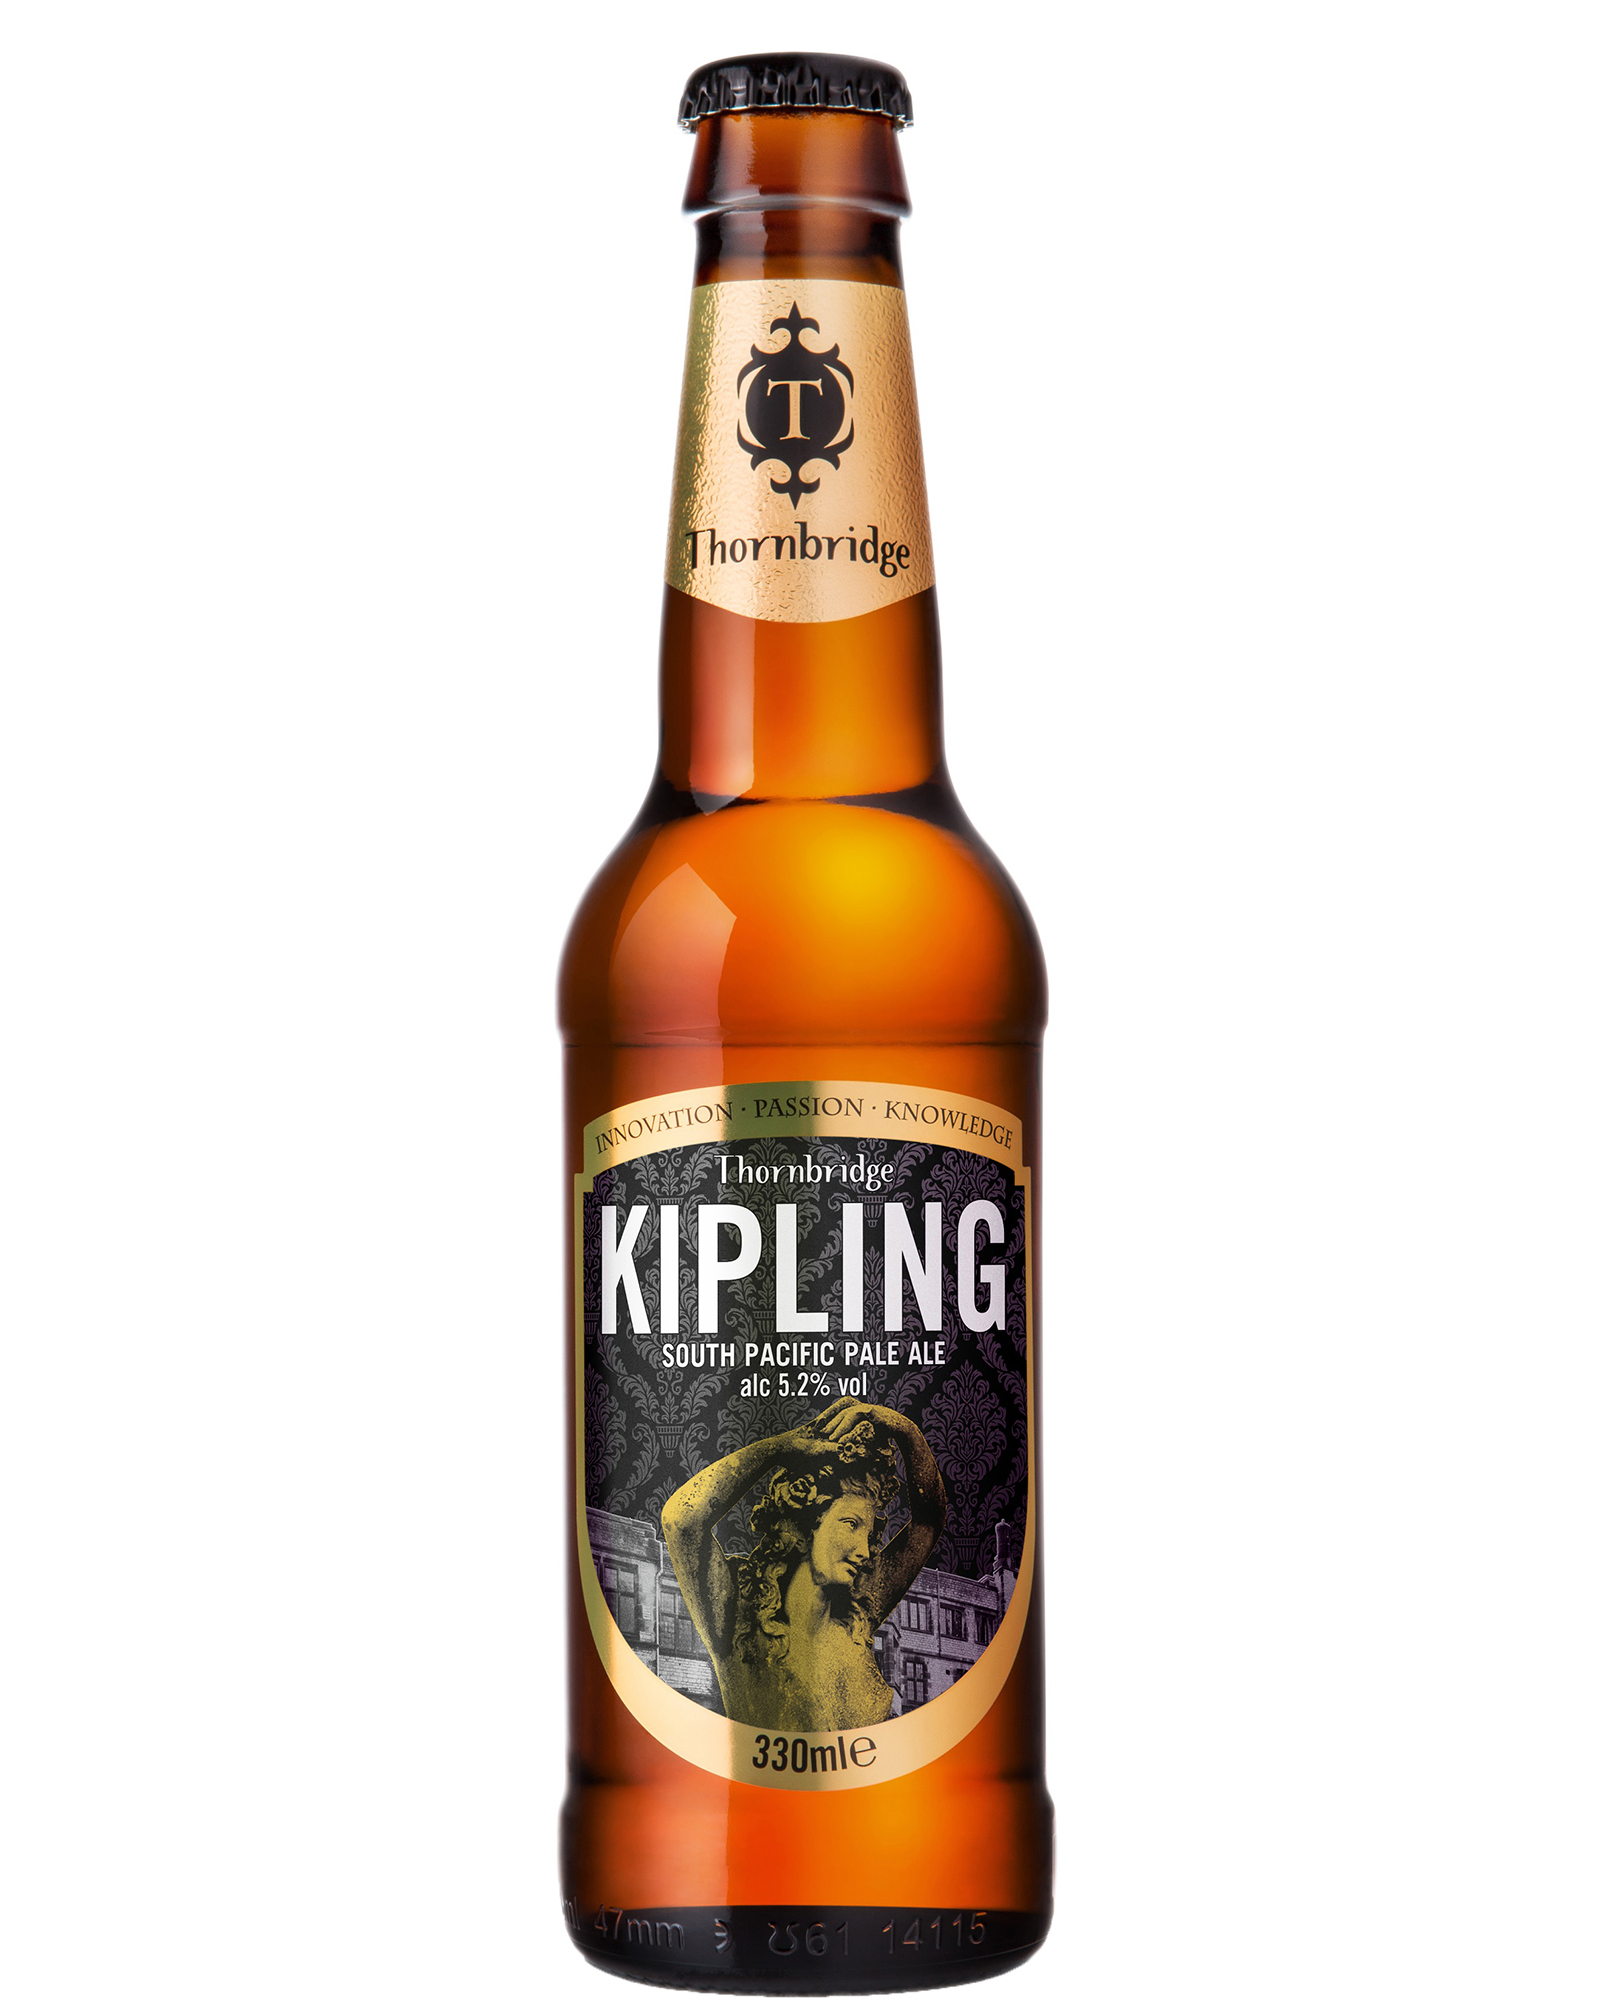 Thornbridge Kipling South Pacific Pale Ale